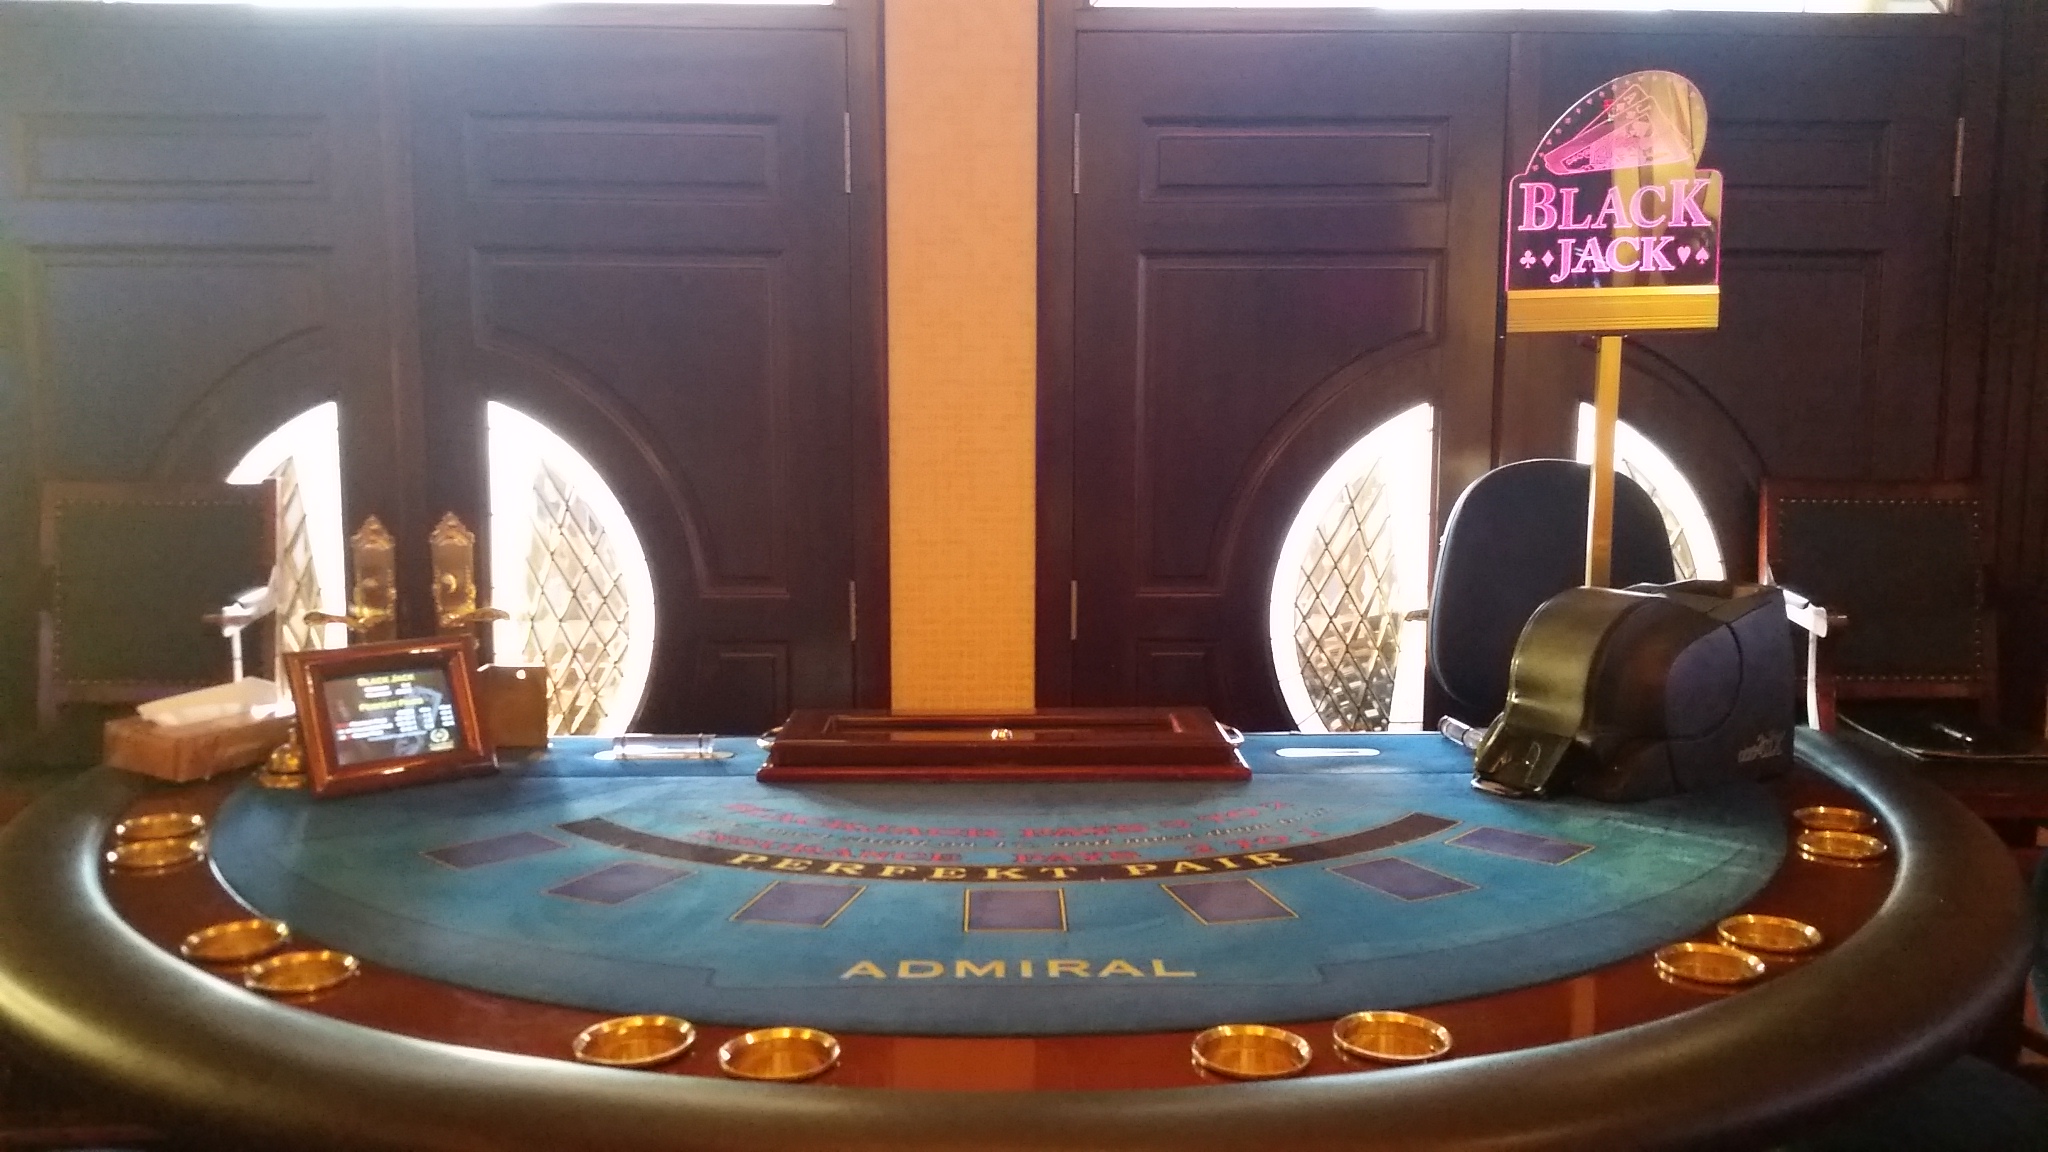 Blackjack-Tisch im Royal Admiral Casino in Folmava / Tschechien